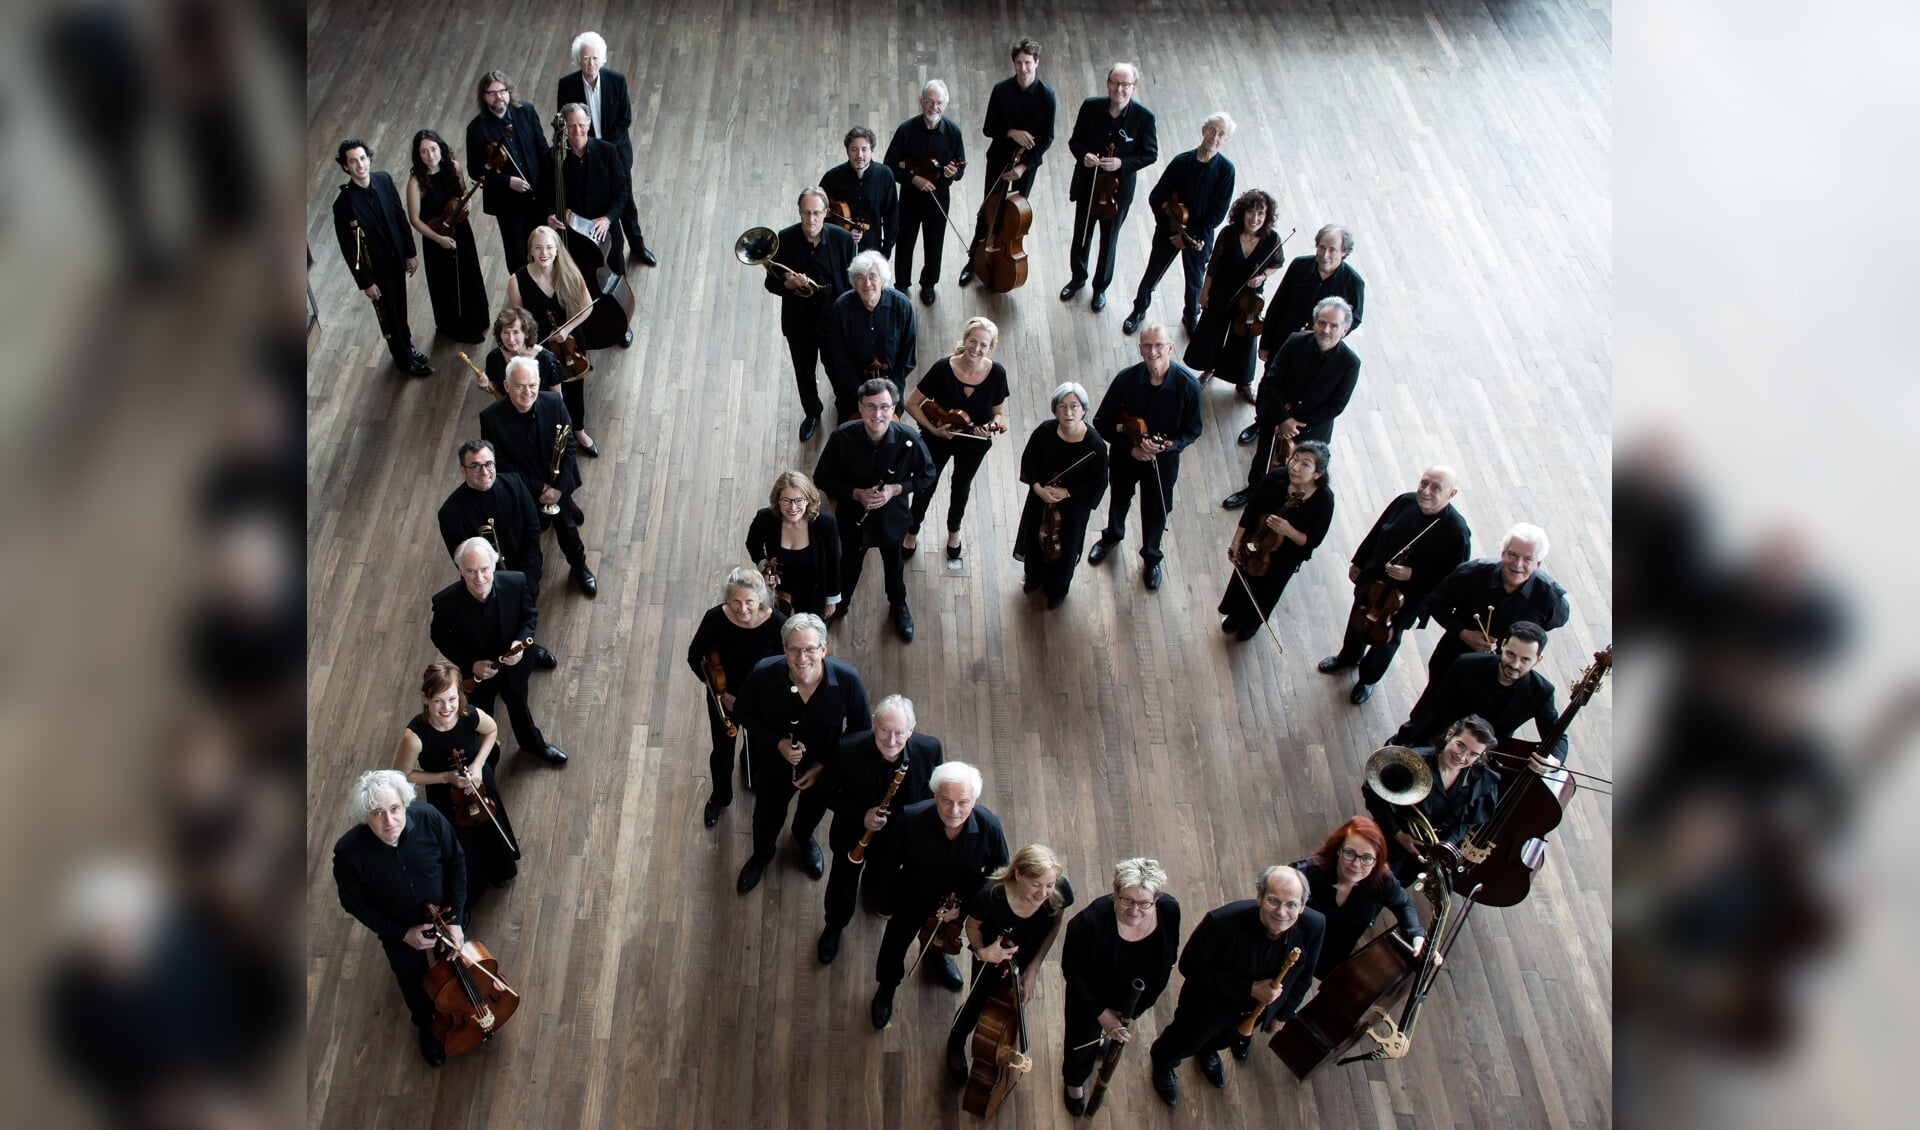 Het Orkest van de Achttiende Eeuw voorafgaand aan De Reünie 28 augustus in Muziekgebouw aan 't IJ.